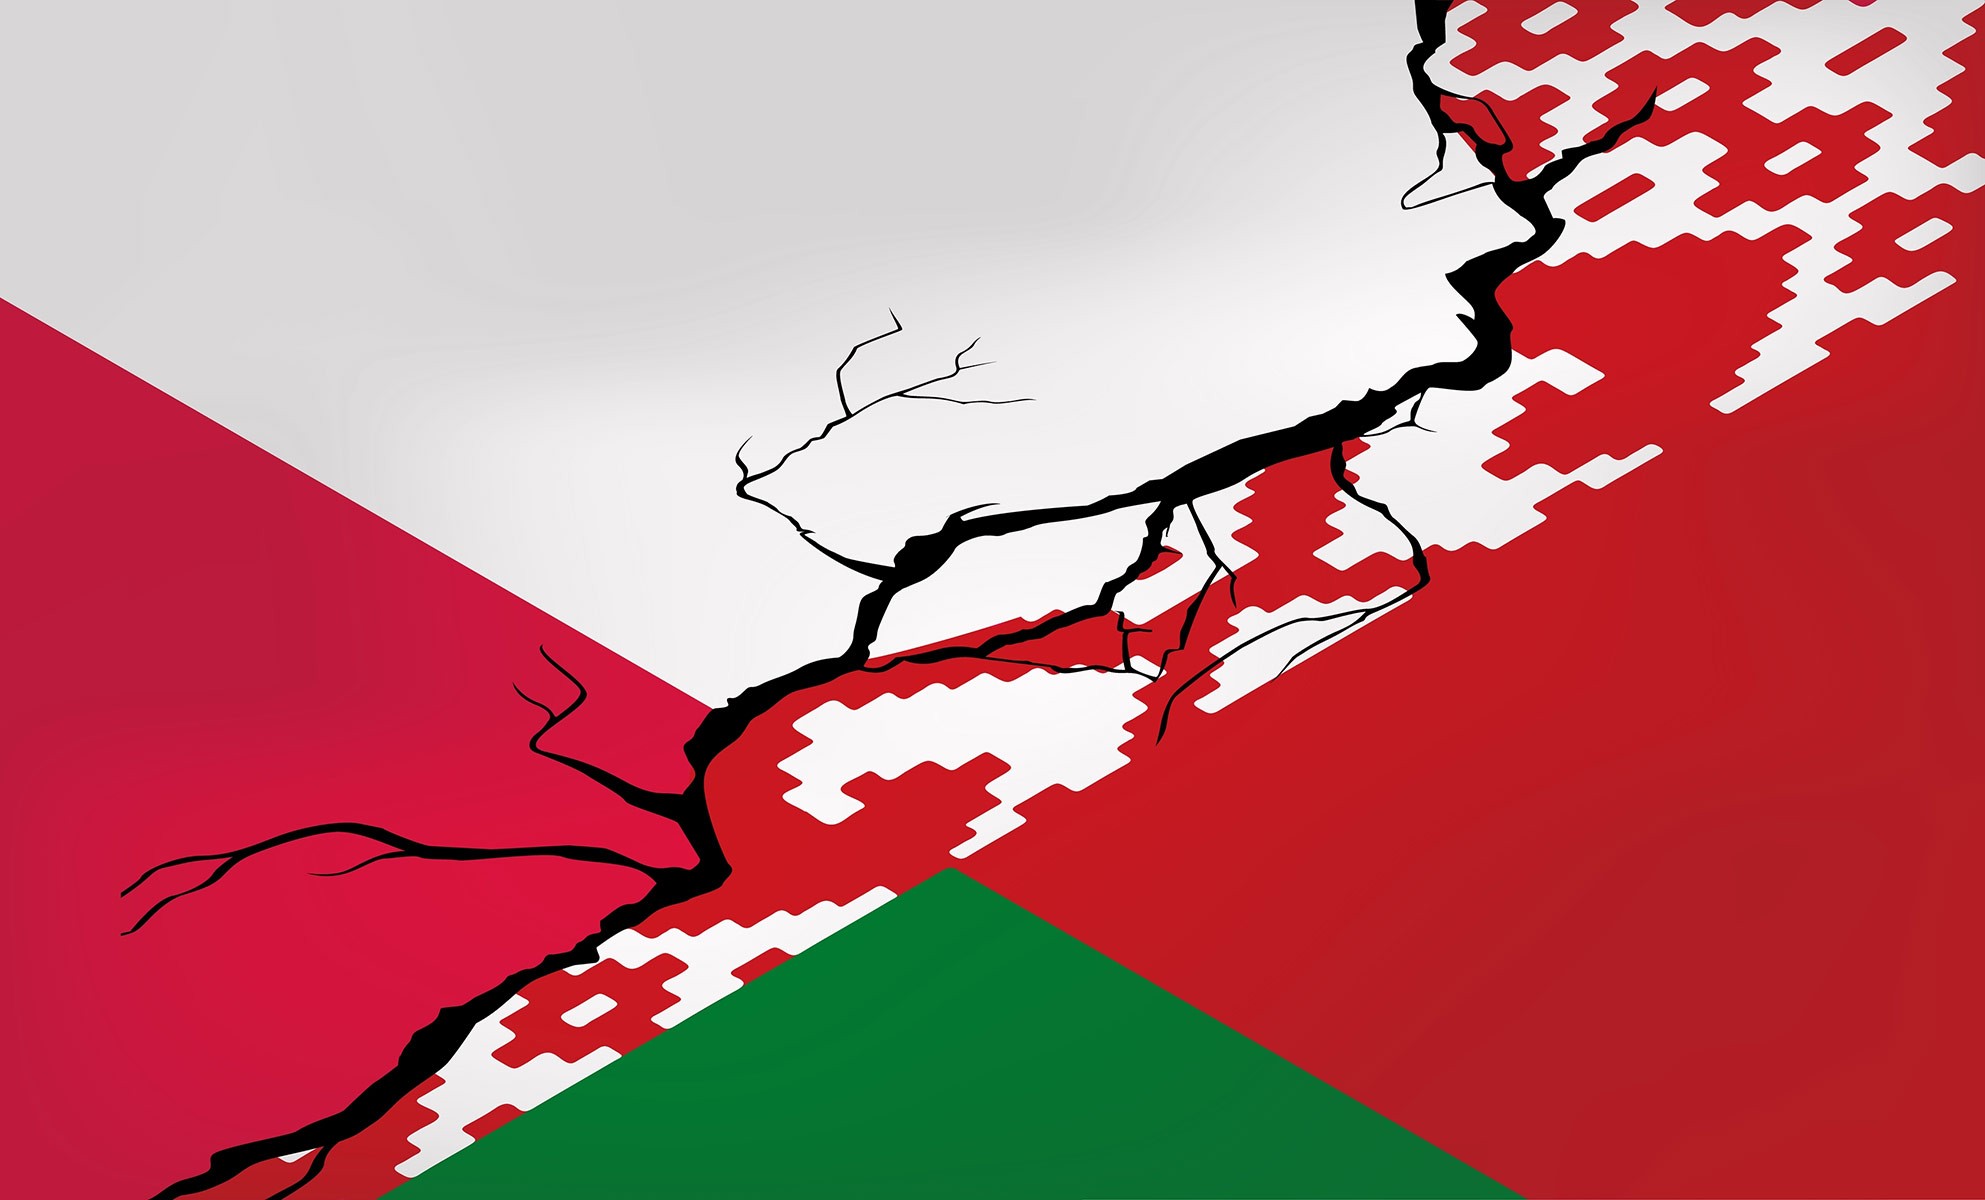 Căng thẳng với Ba Lan vẫn âm ỉ, Belarus quăng thêm 'mồi lửa'. (Nguồn: Shutterstock)